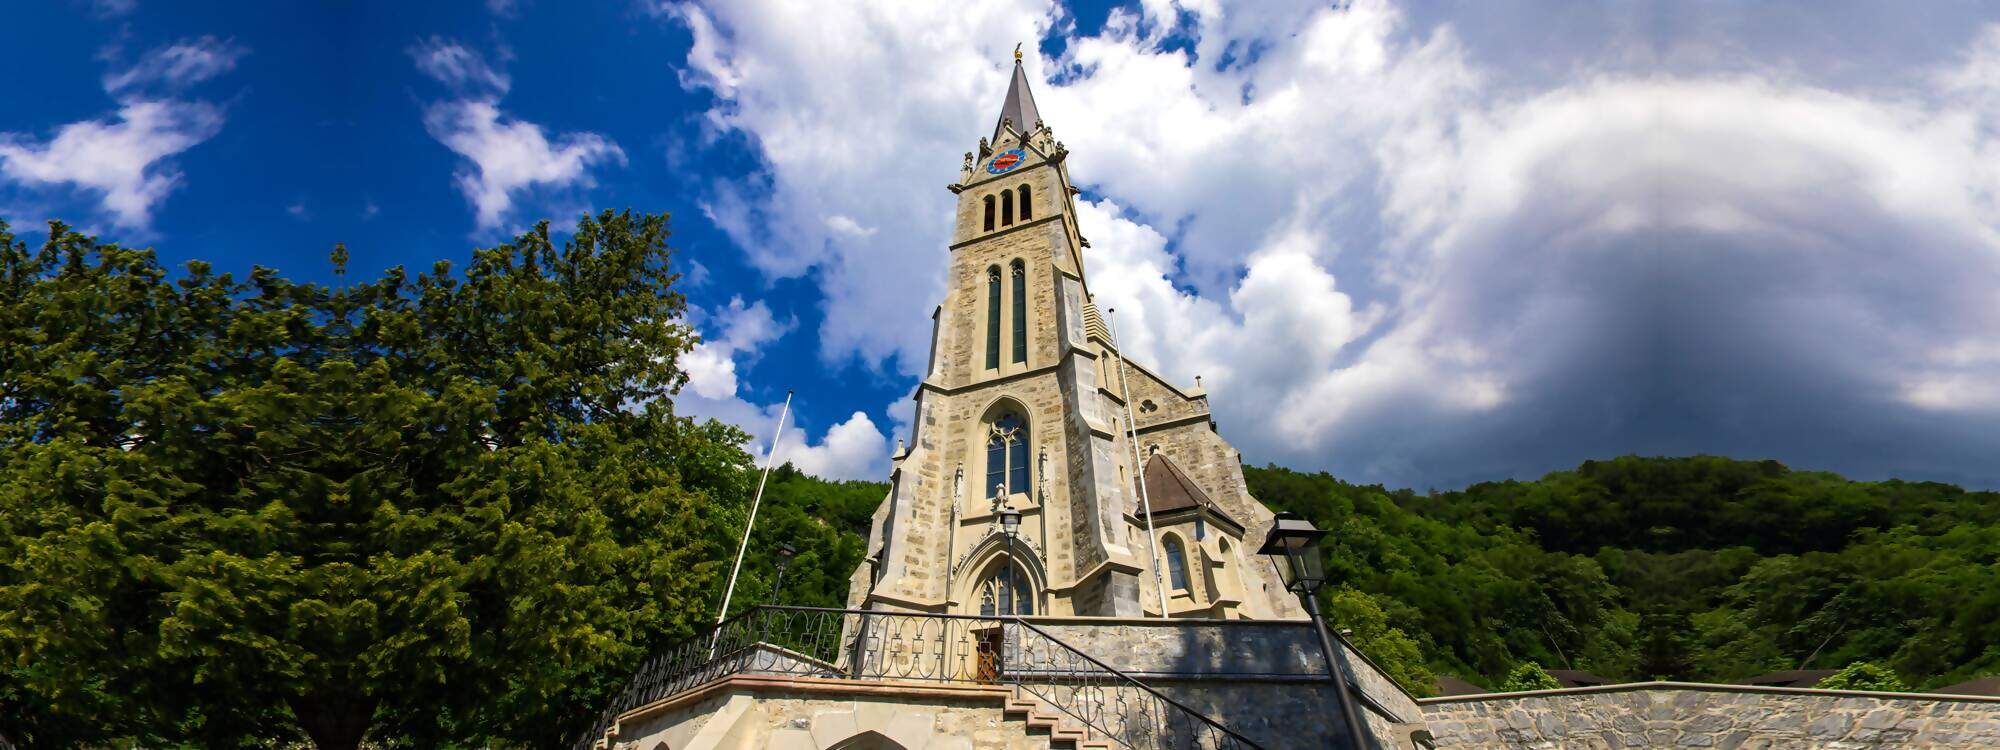 Eine Kirche in Vaduz - die Hauptstadt von Liechtenstein